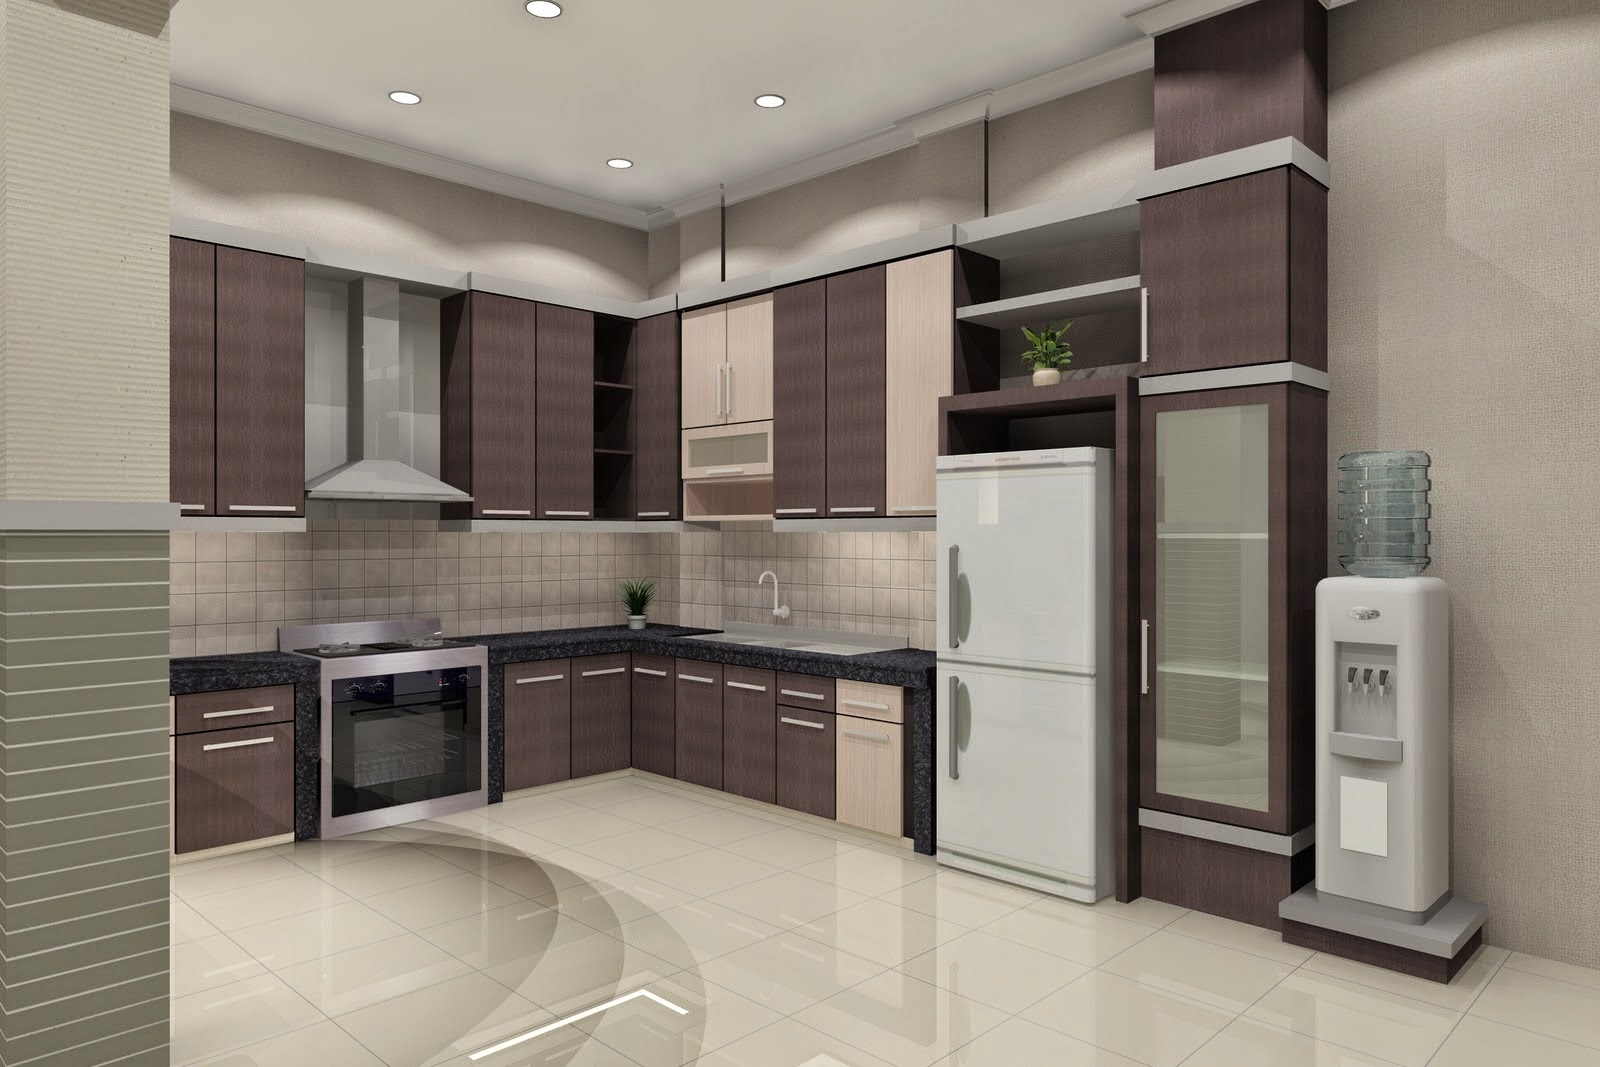 Simple Minimalist Kitchen Design 2015 - Home Design Ideas 2015